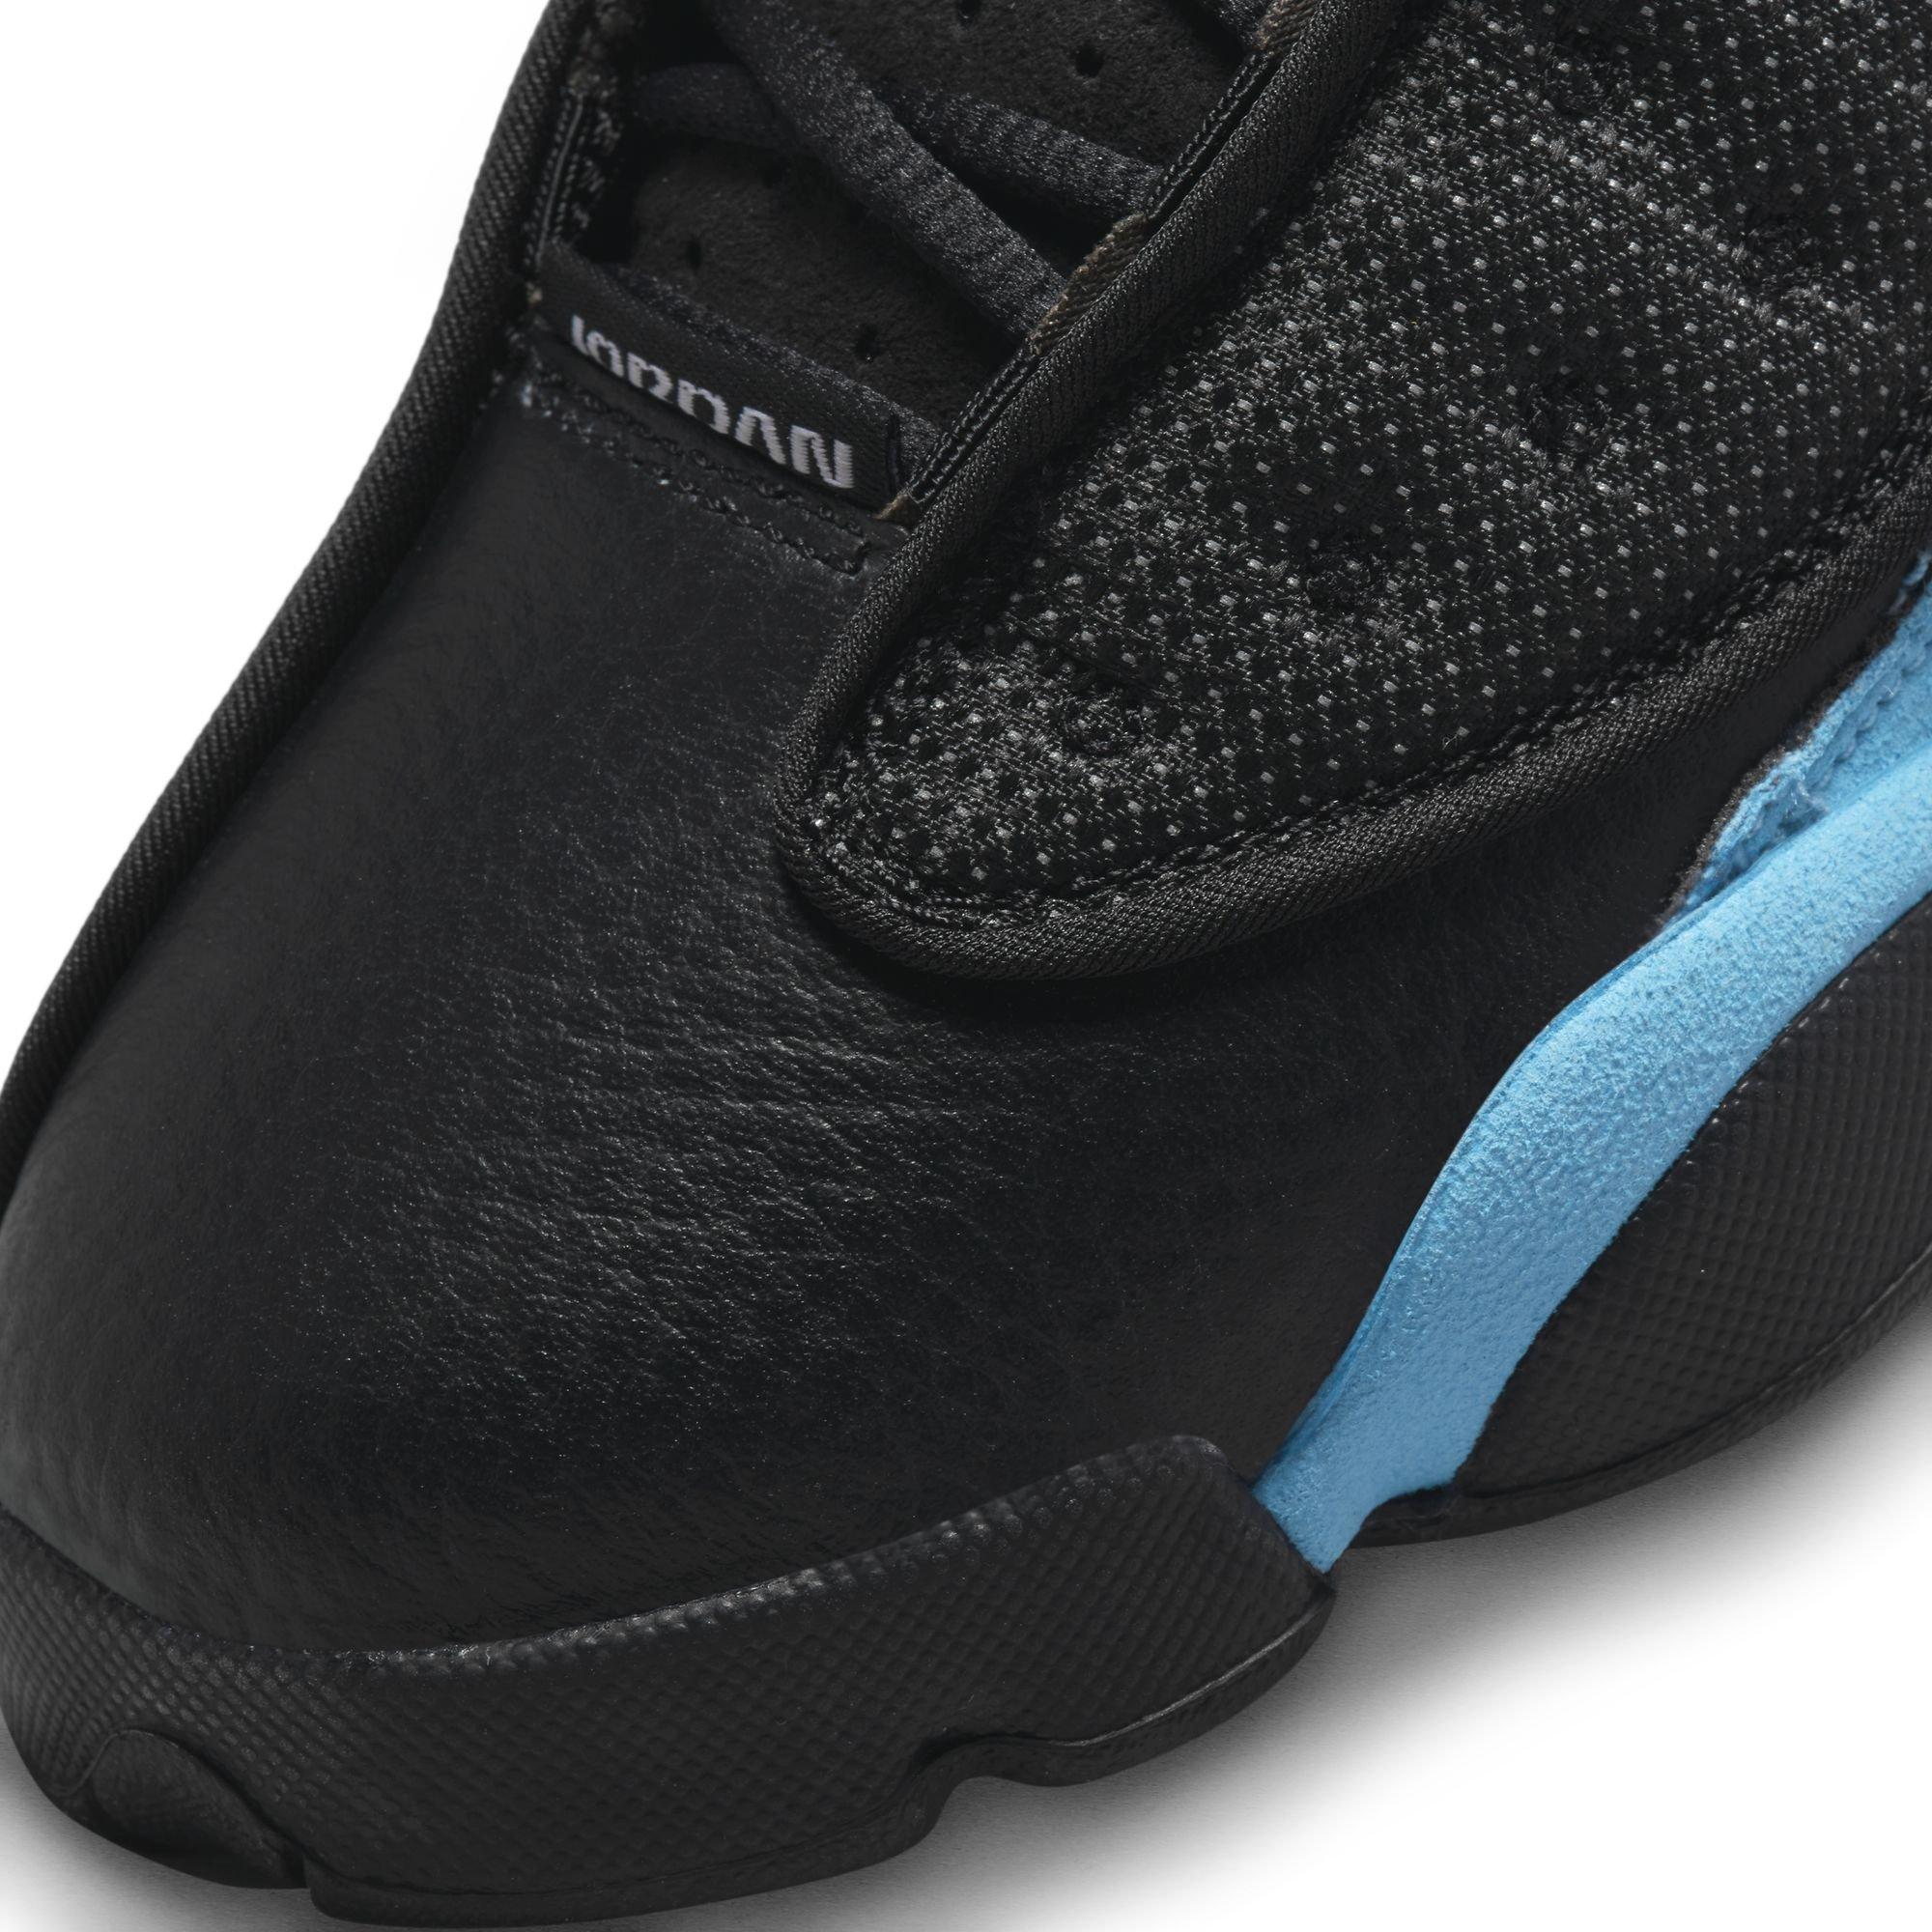 Jordan 13 Retro Mens Shoes 9.5 Black/University Blue/Black